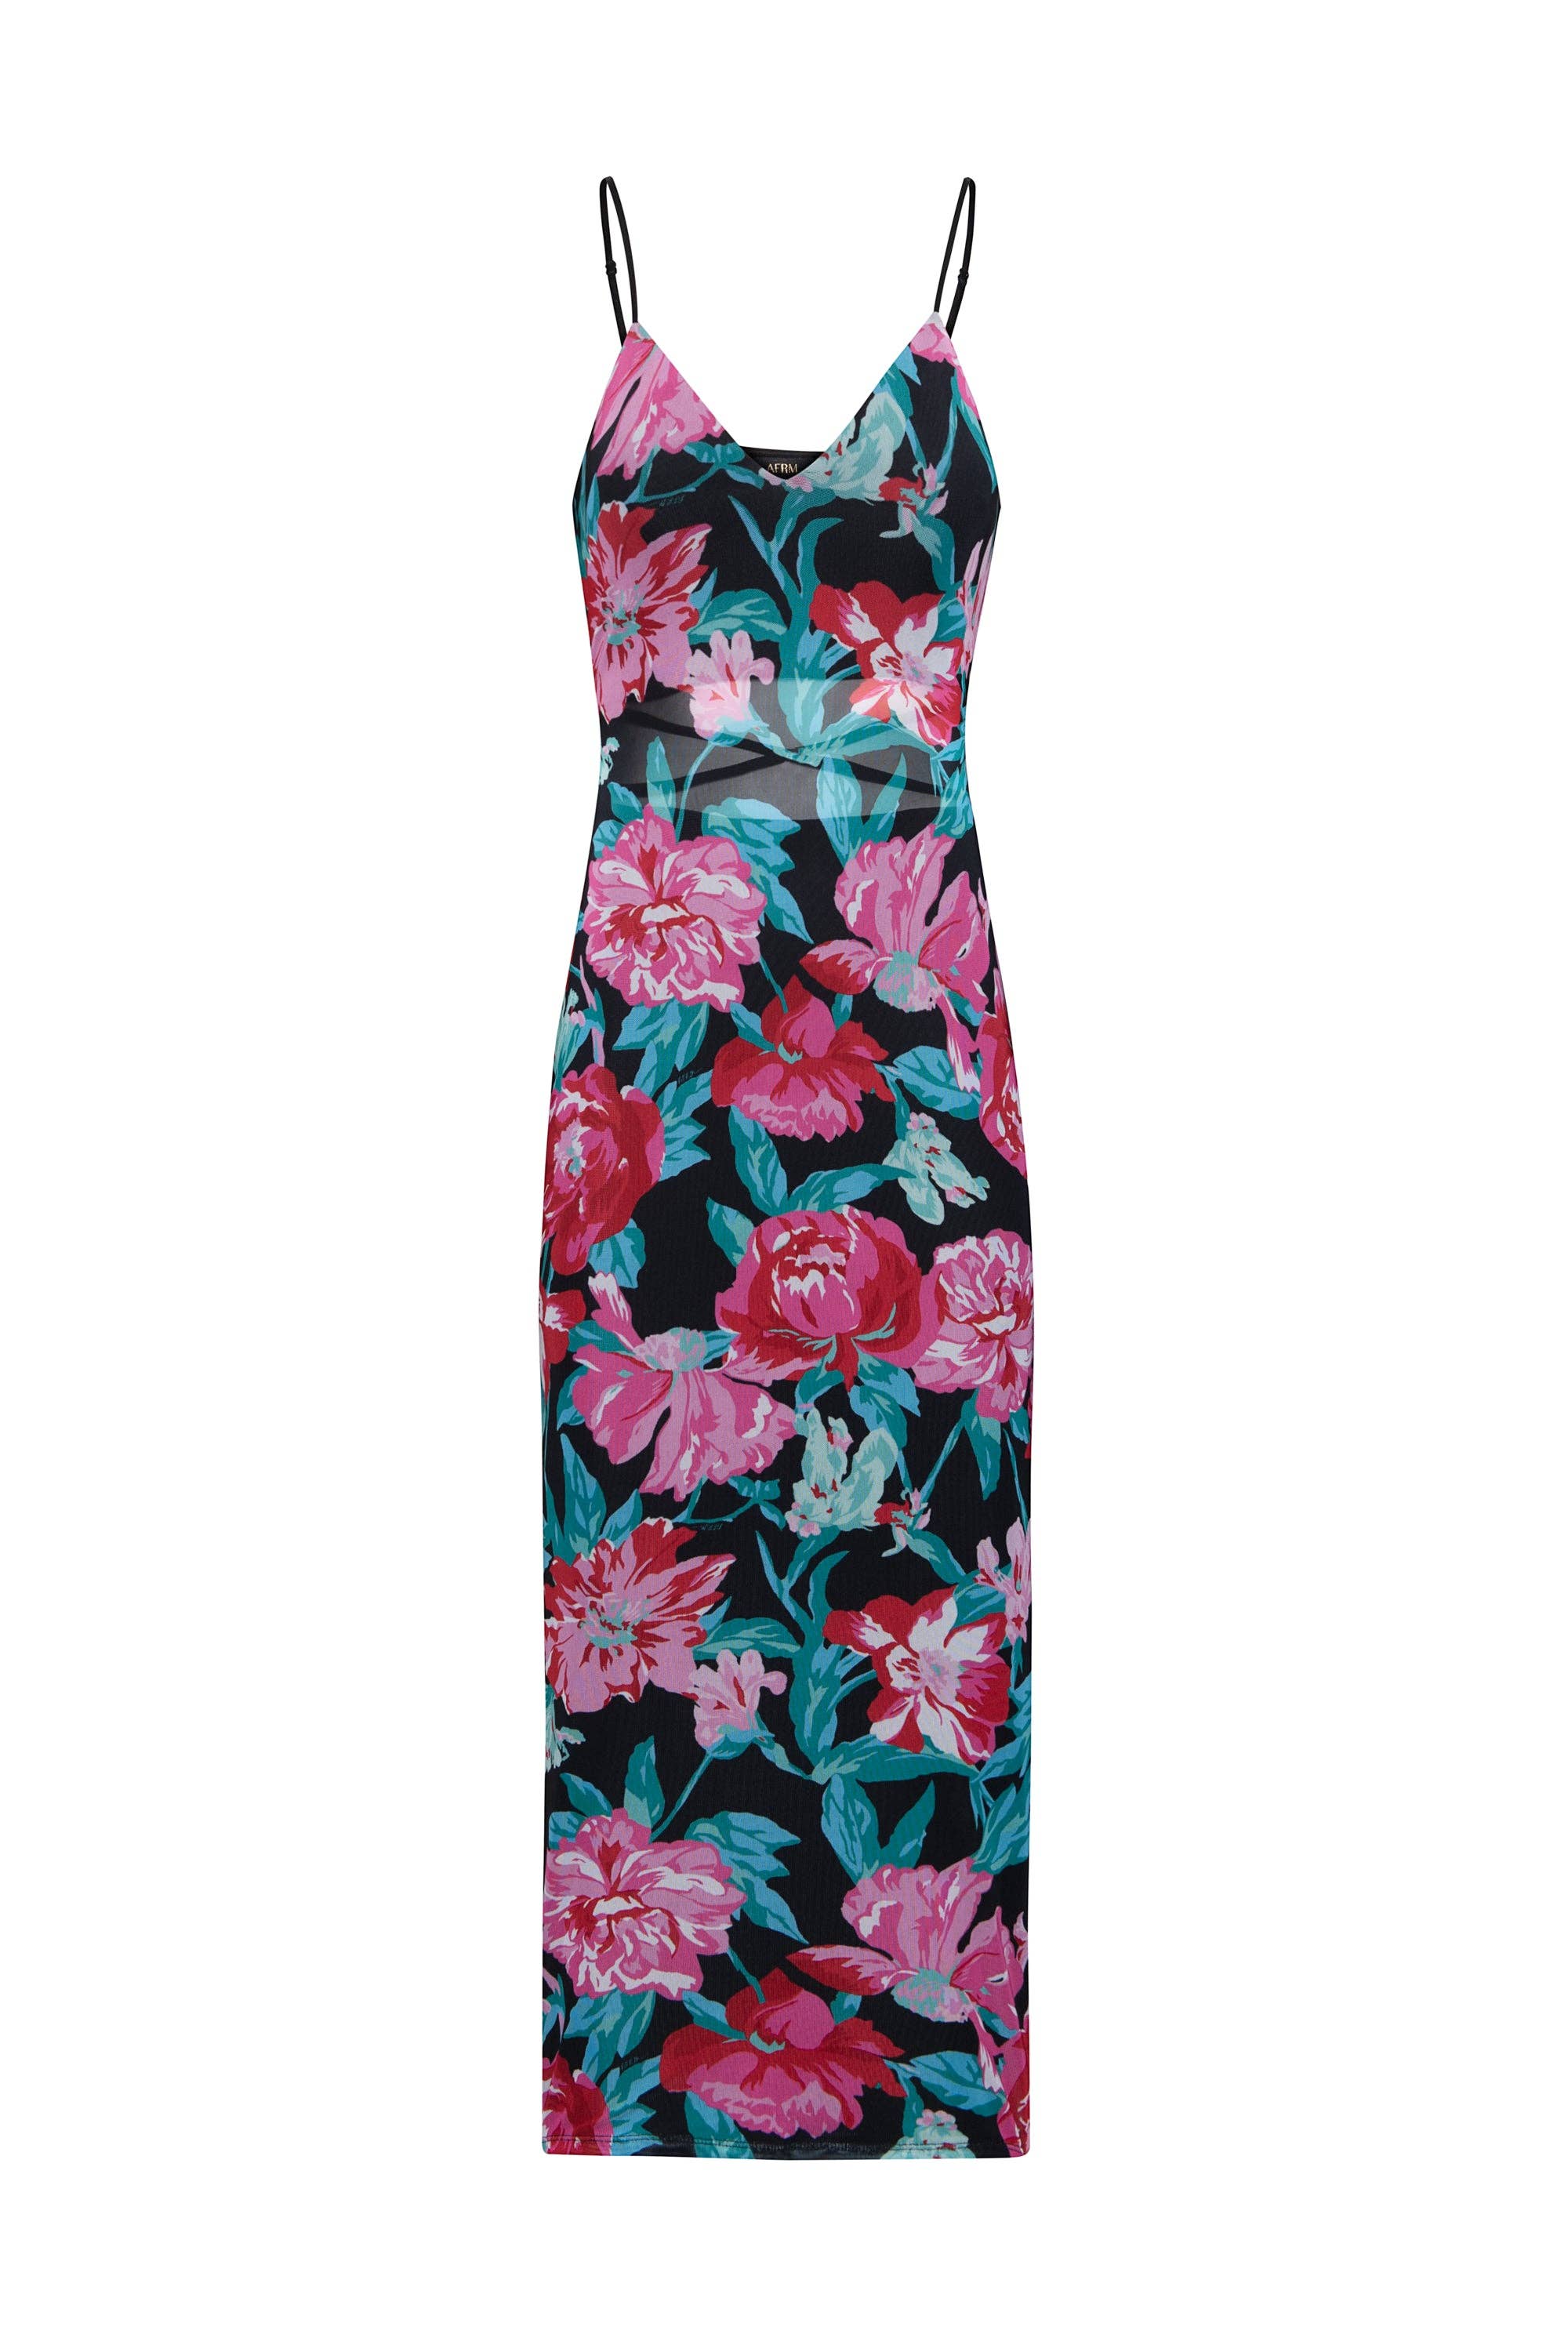 AFRM - Roze Mesh Dress - Vintage Summer Floral